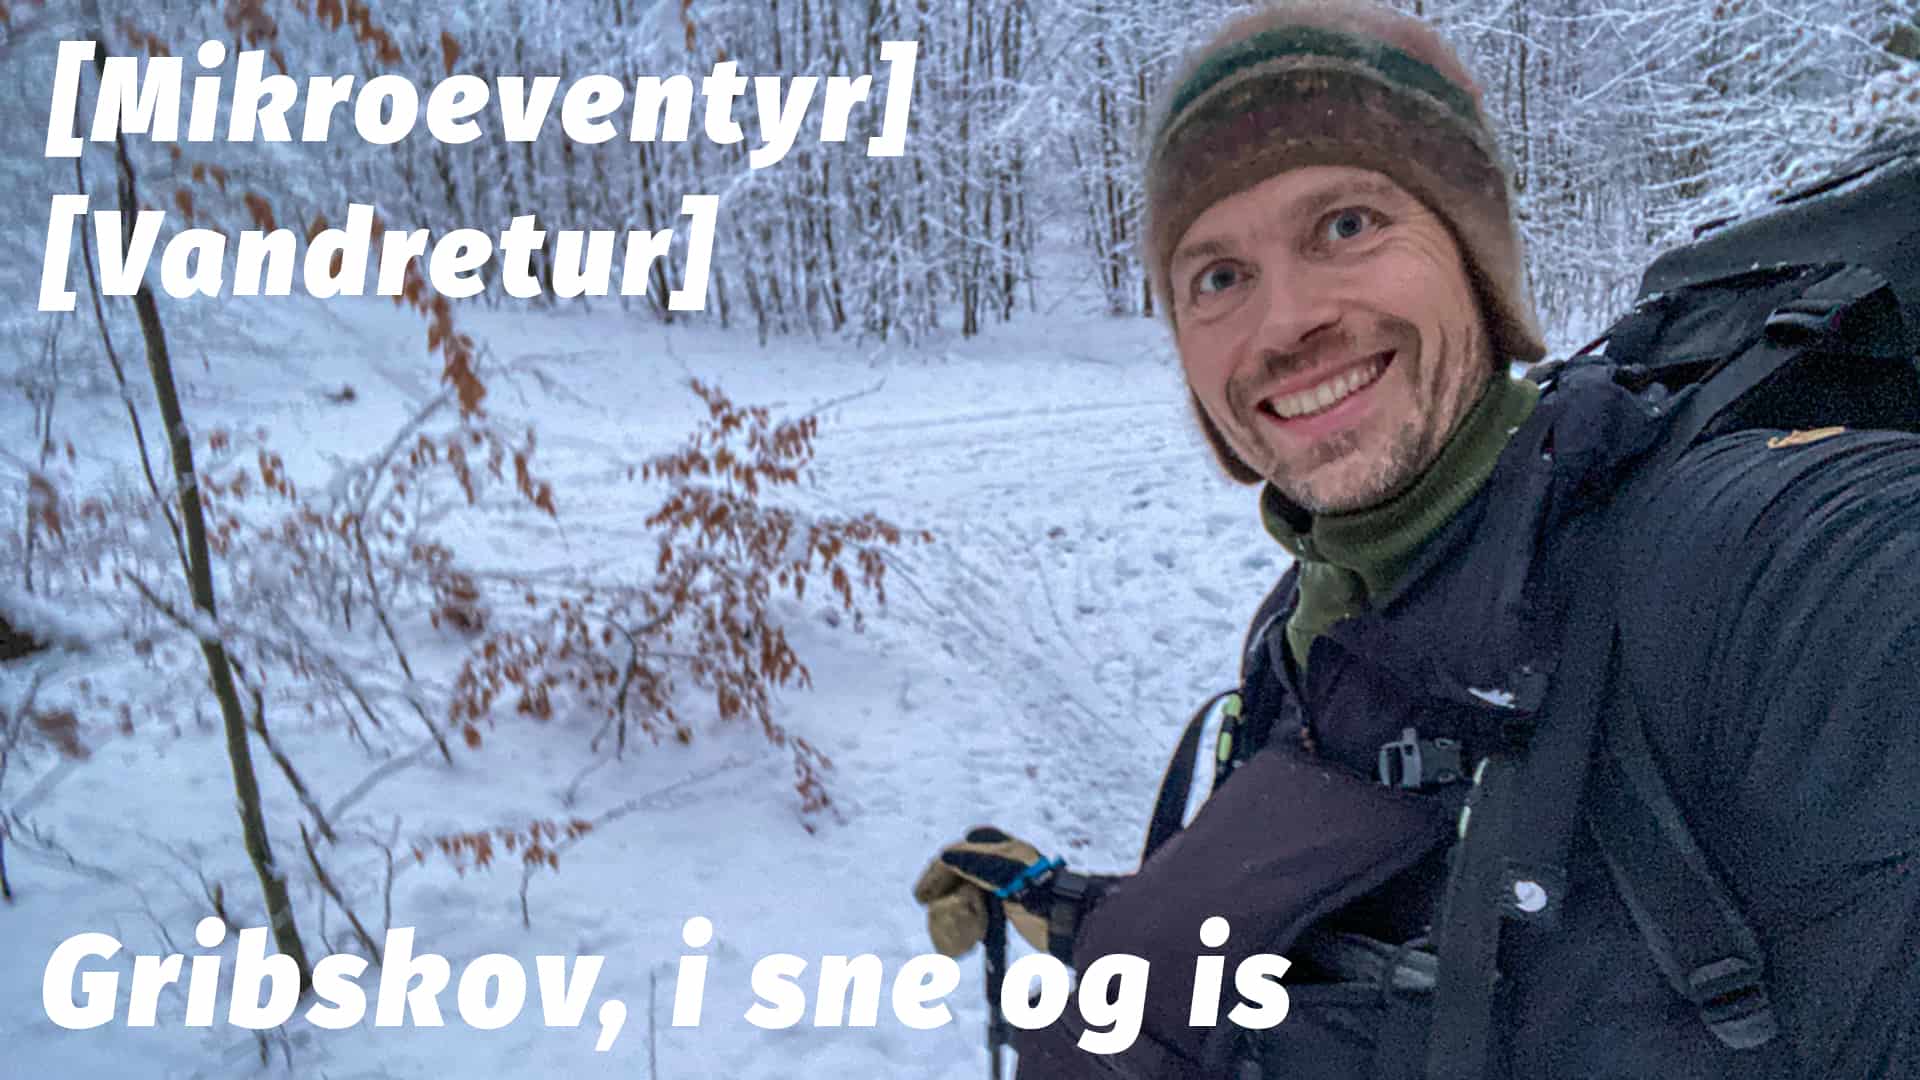 Vandretur i Gribskov, i sne og is, vinter [Mikroeventyr] kom med ud med eventyrer Erik B. Jørgensen